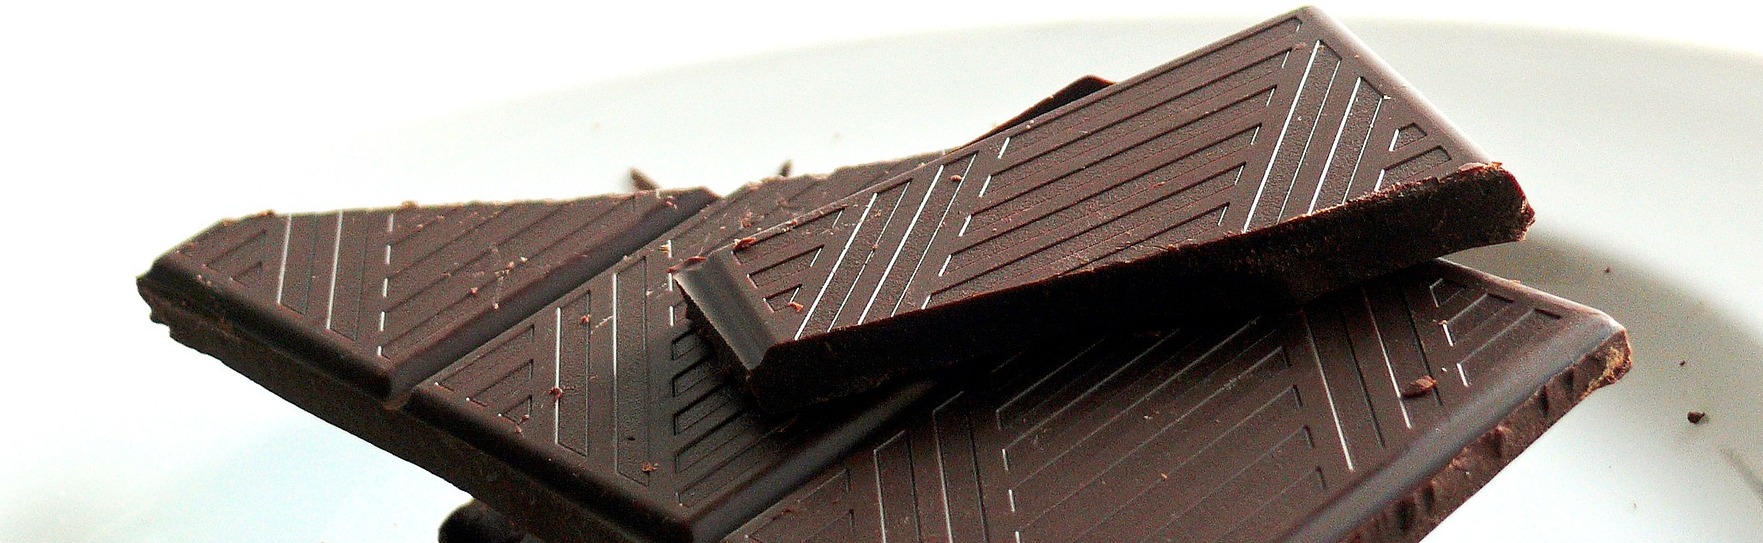 Una ingesta alta de chocolate por la mañana puede ayudar a quemar grasa y reducir los índices de glucemia en mujeres posmenopáusicas